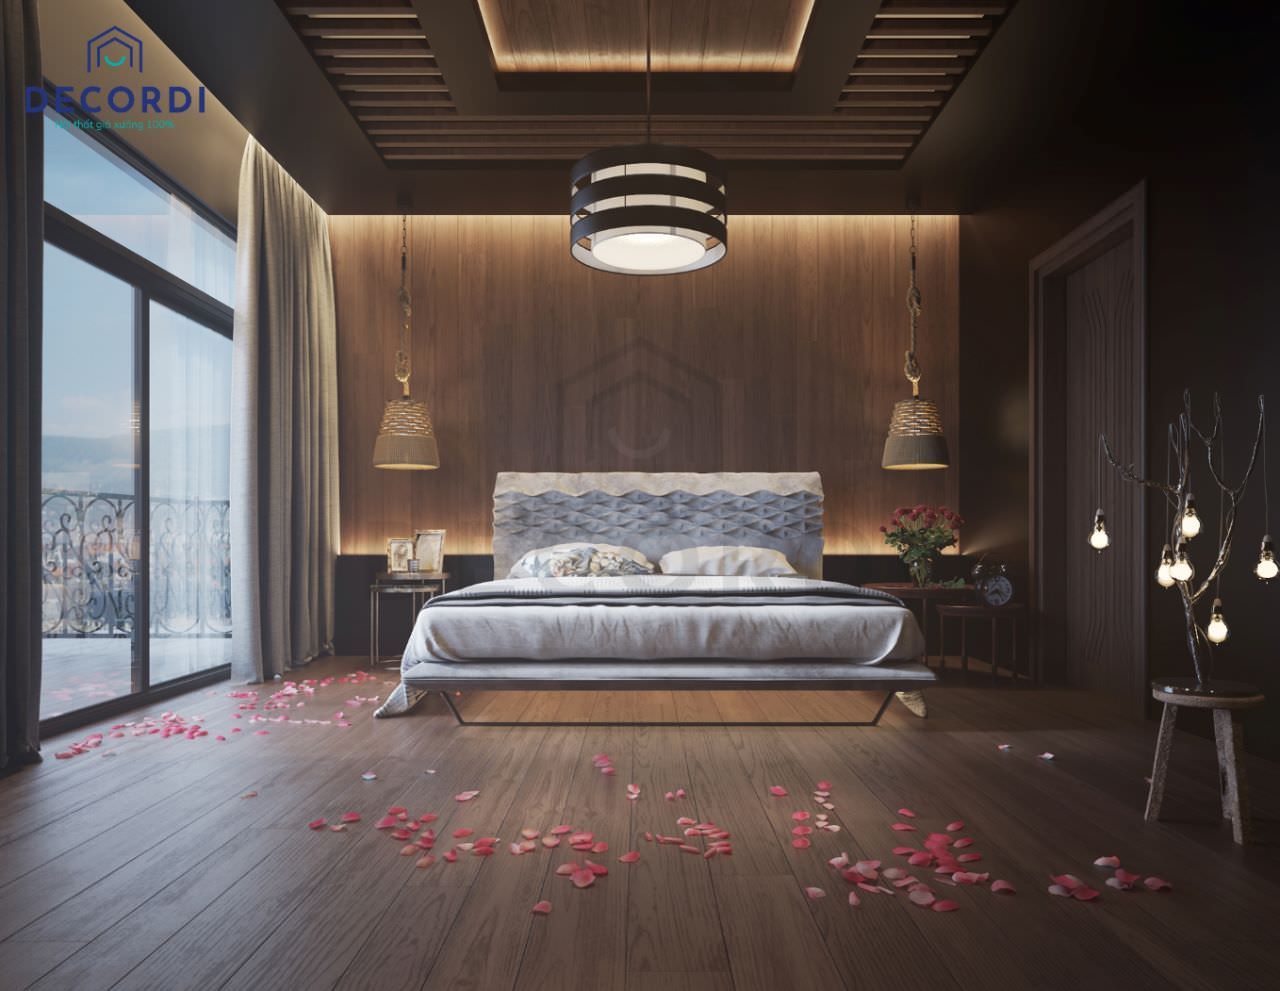 Căn phòng ngủ được thiết kế theo hơi hướng Nhật Bản nhưng lại kết hợp với chất liệu gỗ óc chó tạo nên một tổng thể đậm nét Á Đông tươi mới